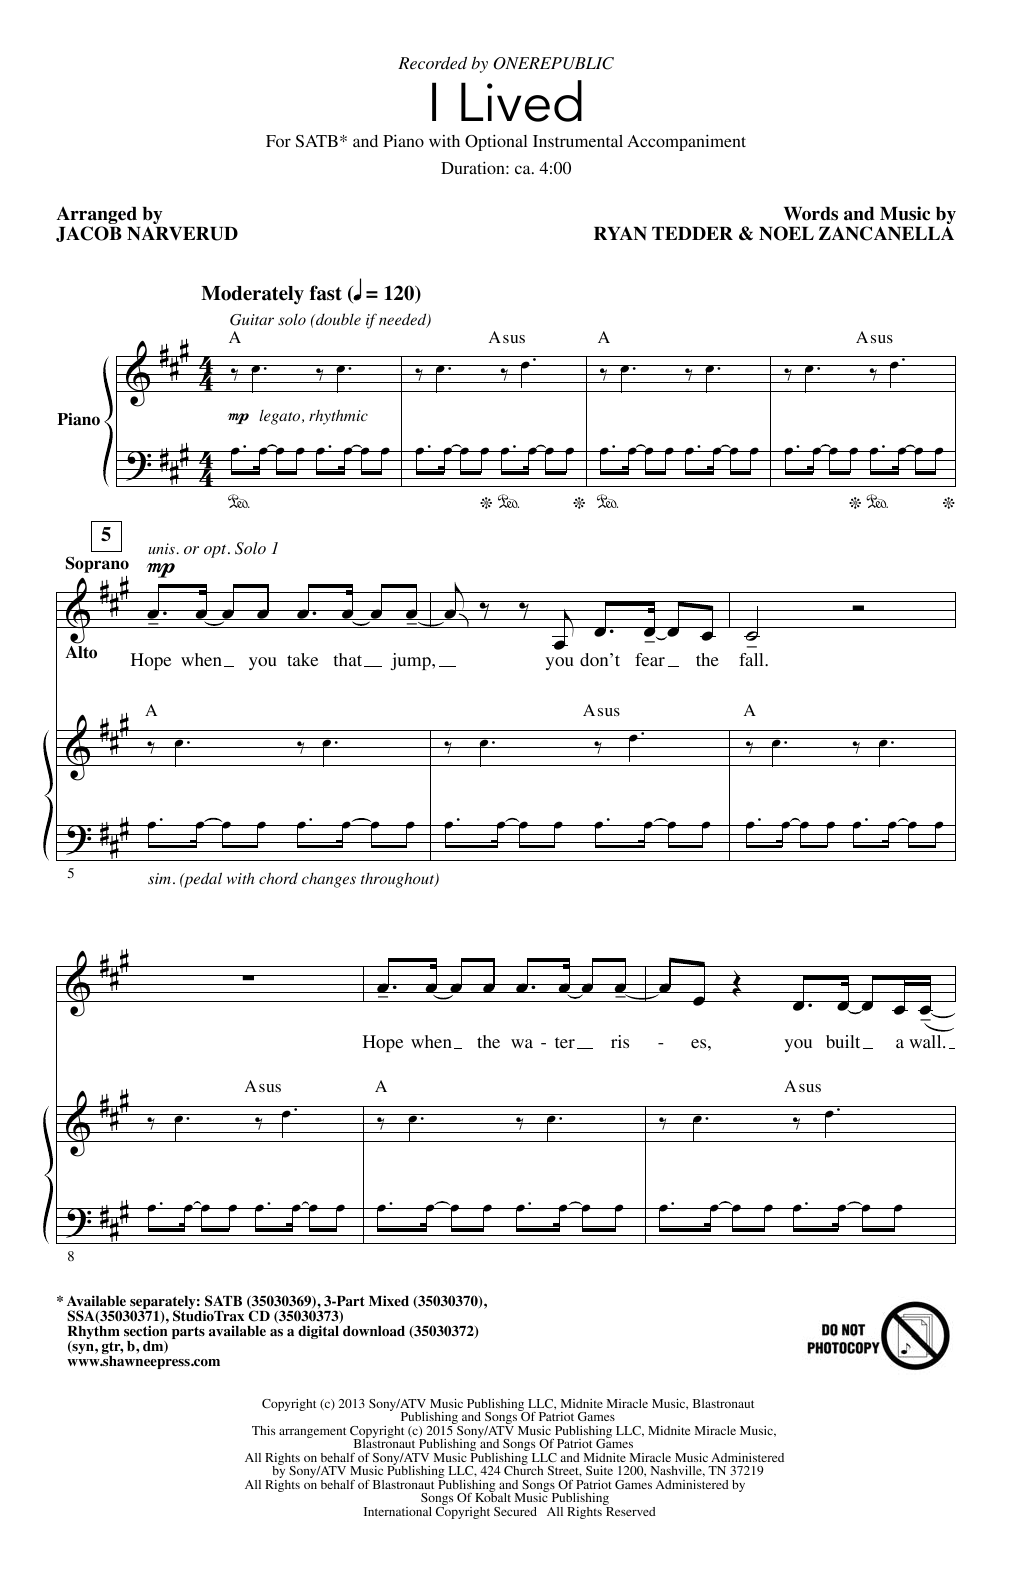 OneRepublic I Lived (arr. Jacob Narverud) Sheet Music Notes & Chords for SSA - Download or Print PDF